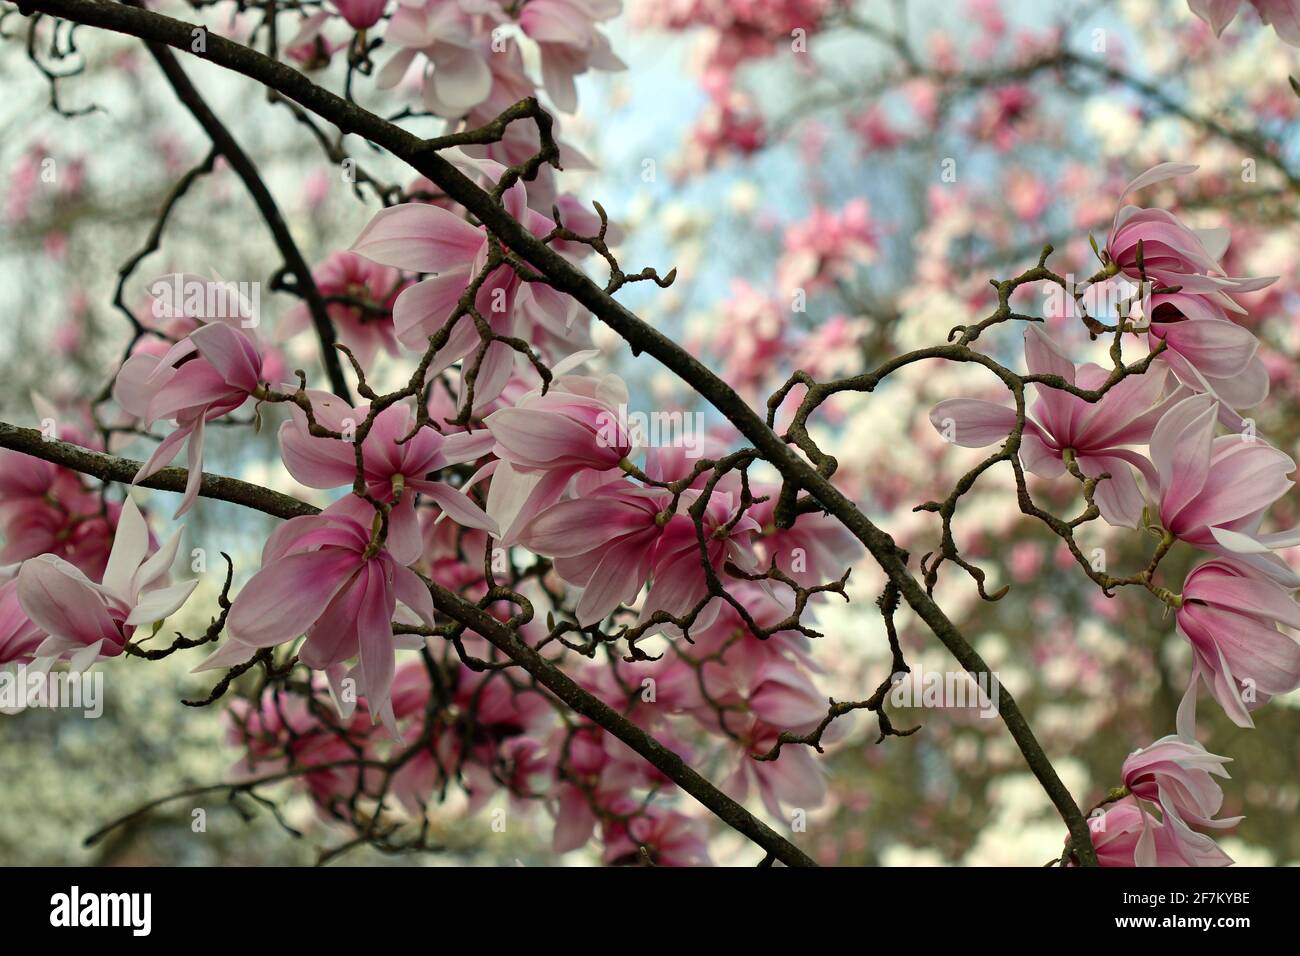 Les fleurs roses d'un arbre ornemental de Magnolia Sprengeri Diva, au ciel bleu et à l'herbe verte. Jardin anglais, mars Banque D'Images